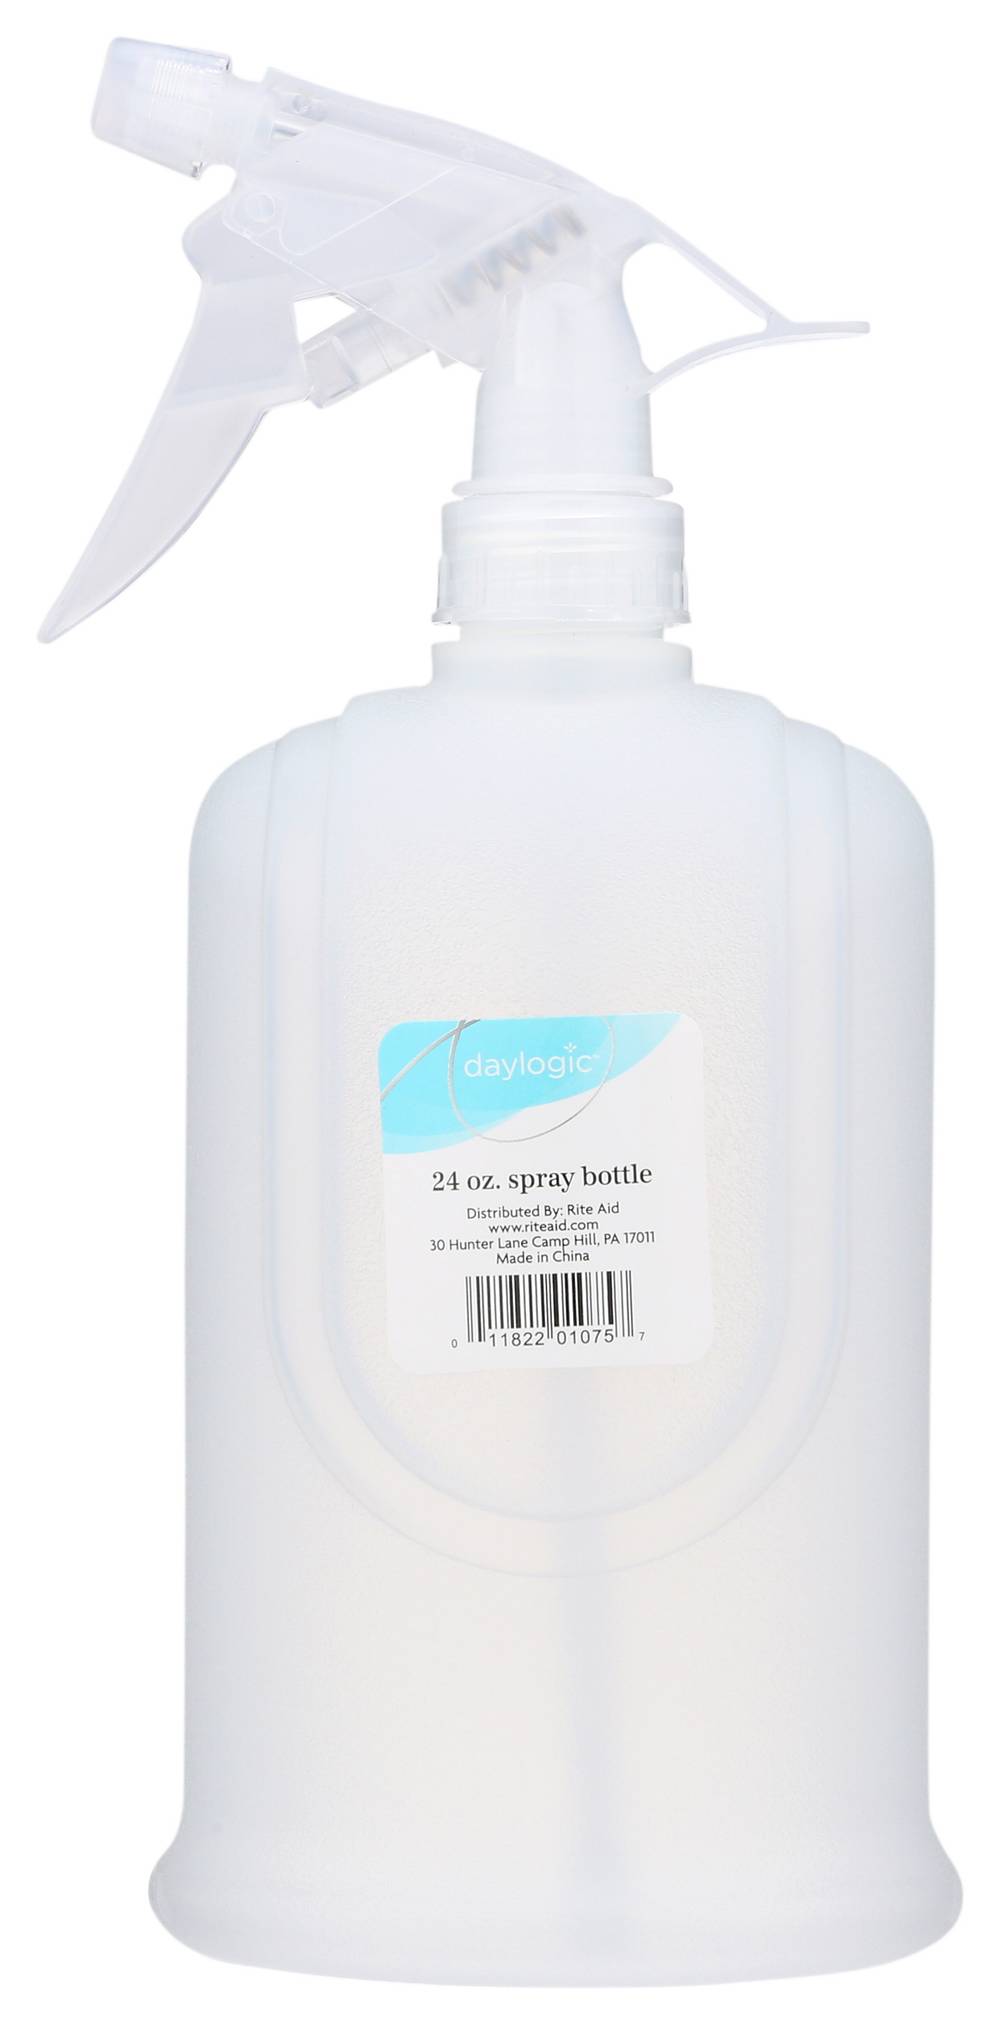 Daylogic Spray Bottle